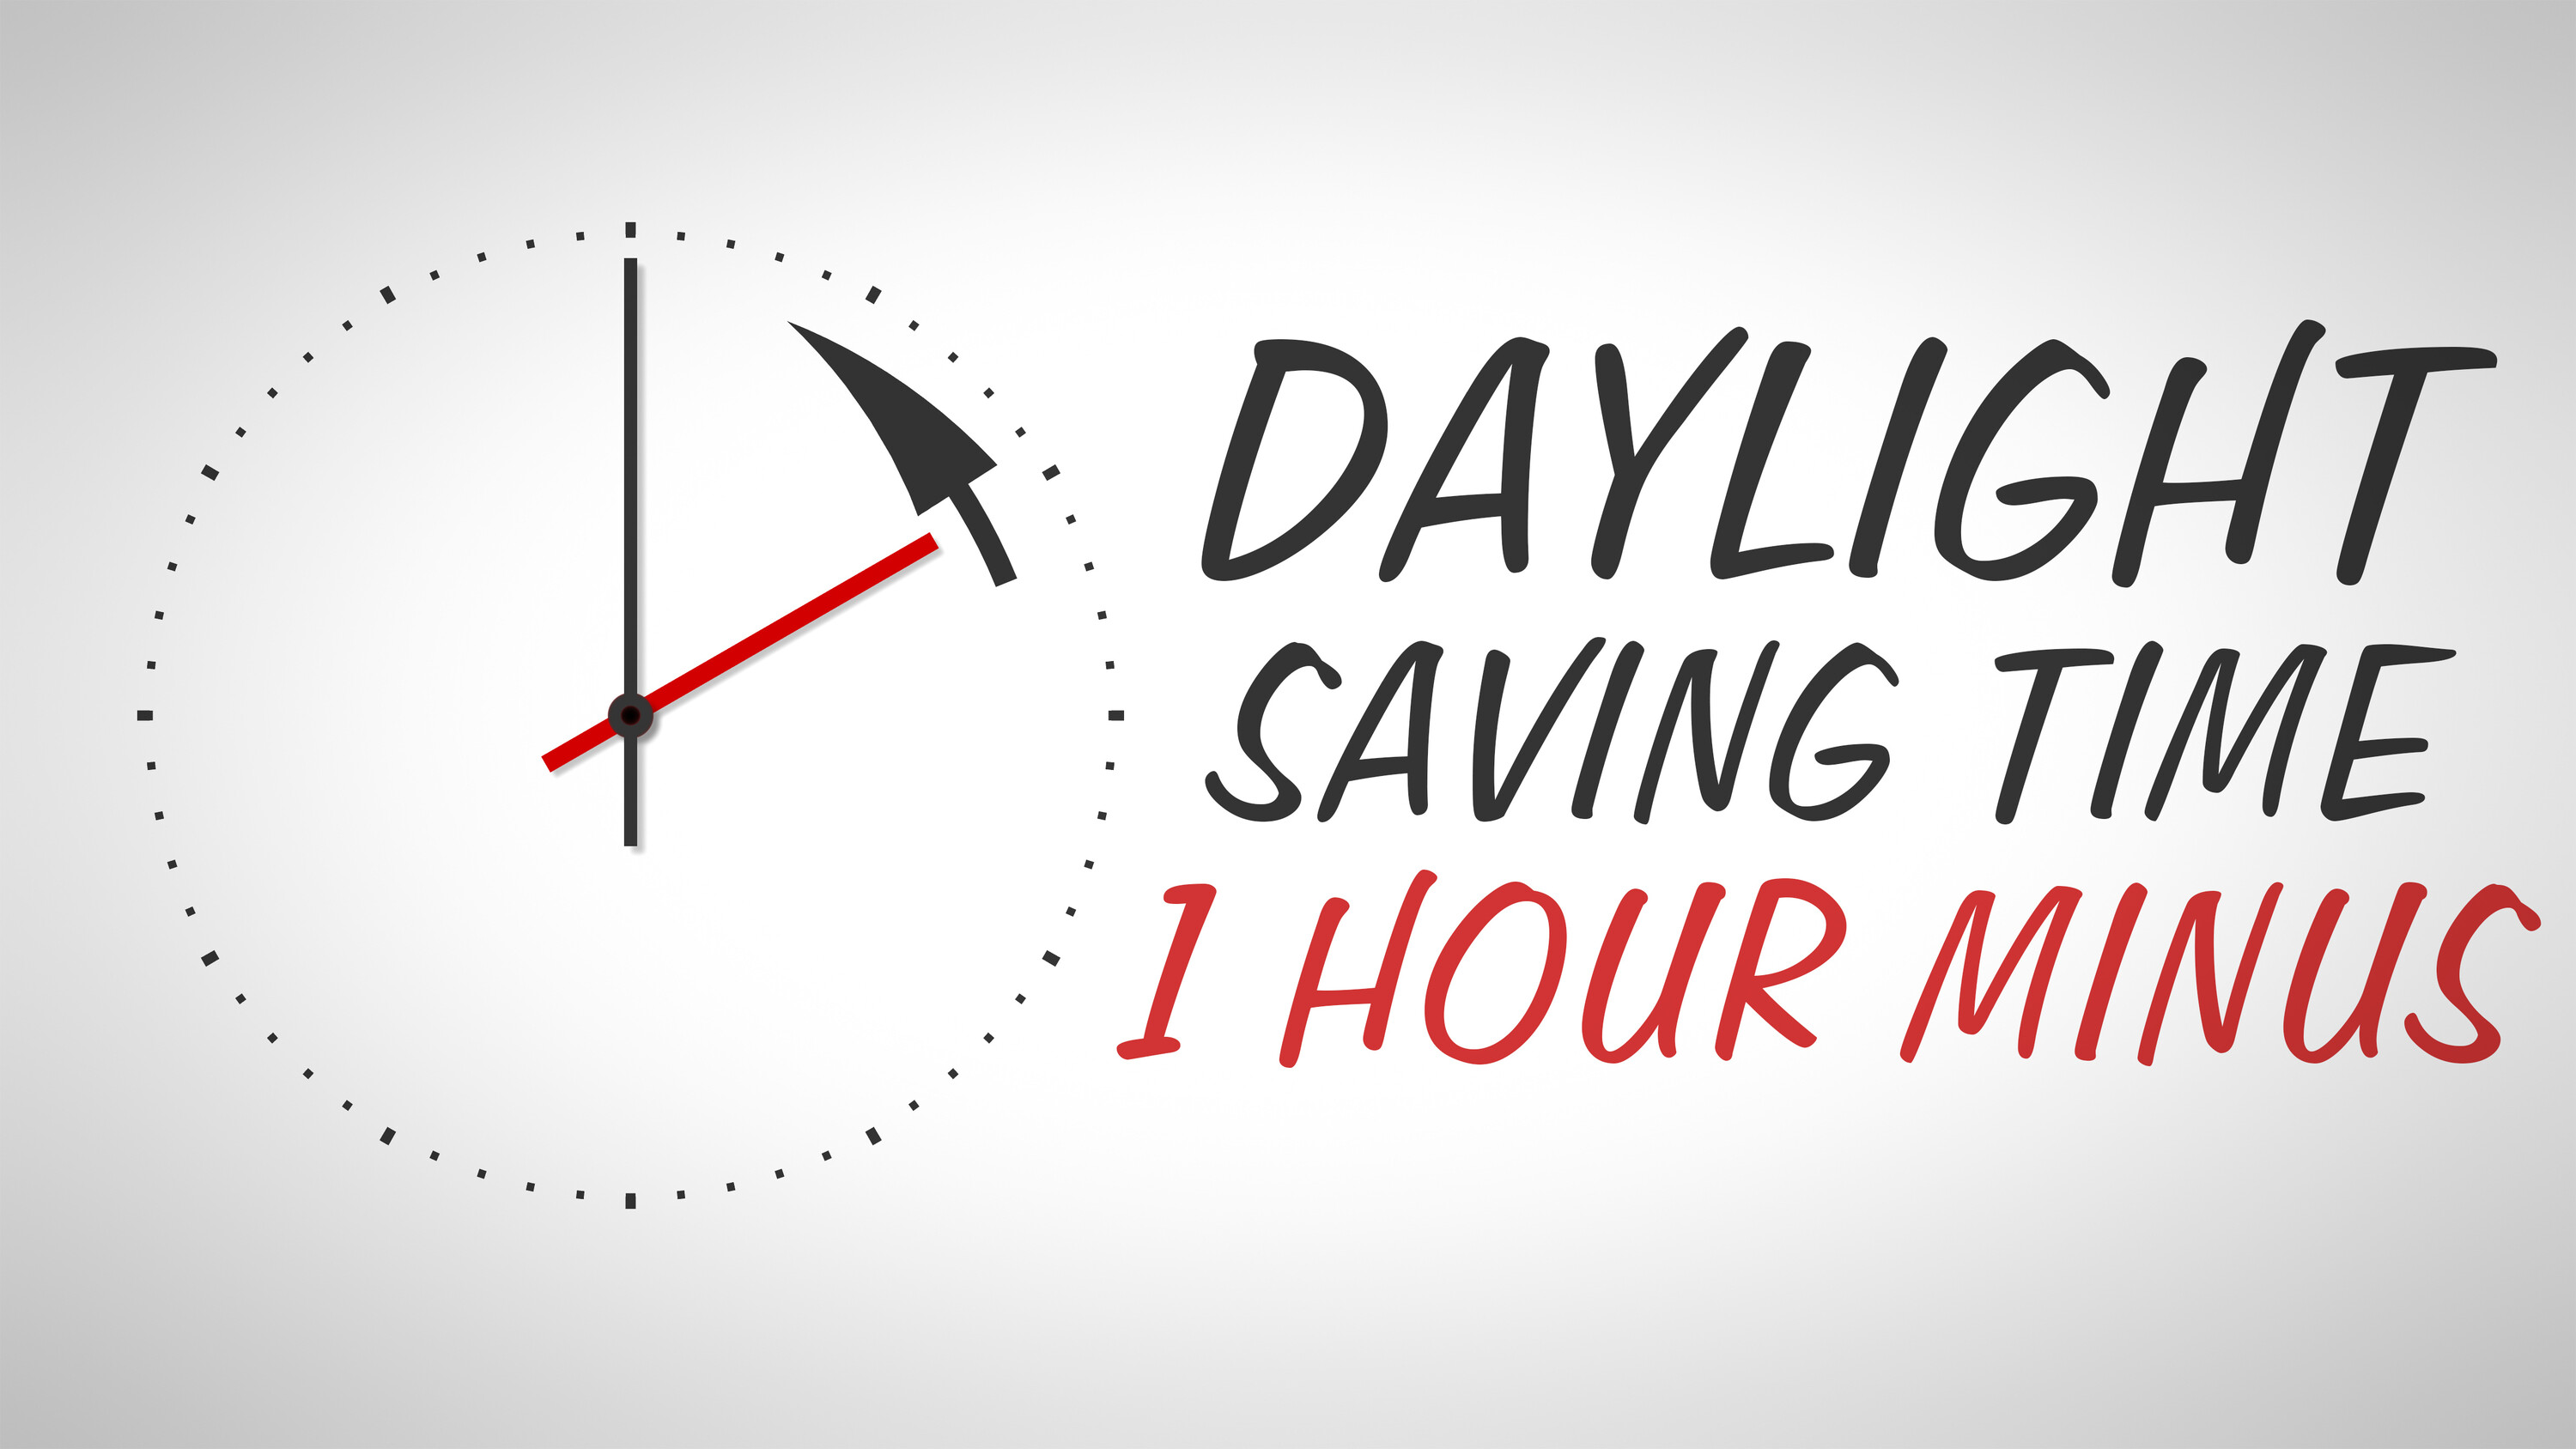 15 40 плюс час. Летнее время. Daylight saving time. Переходим на летнее время. Save время.